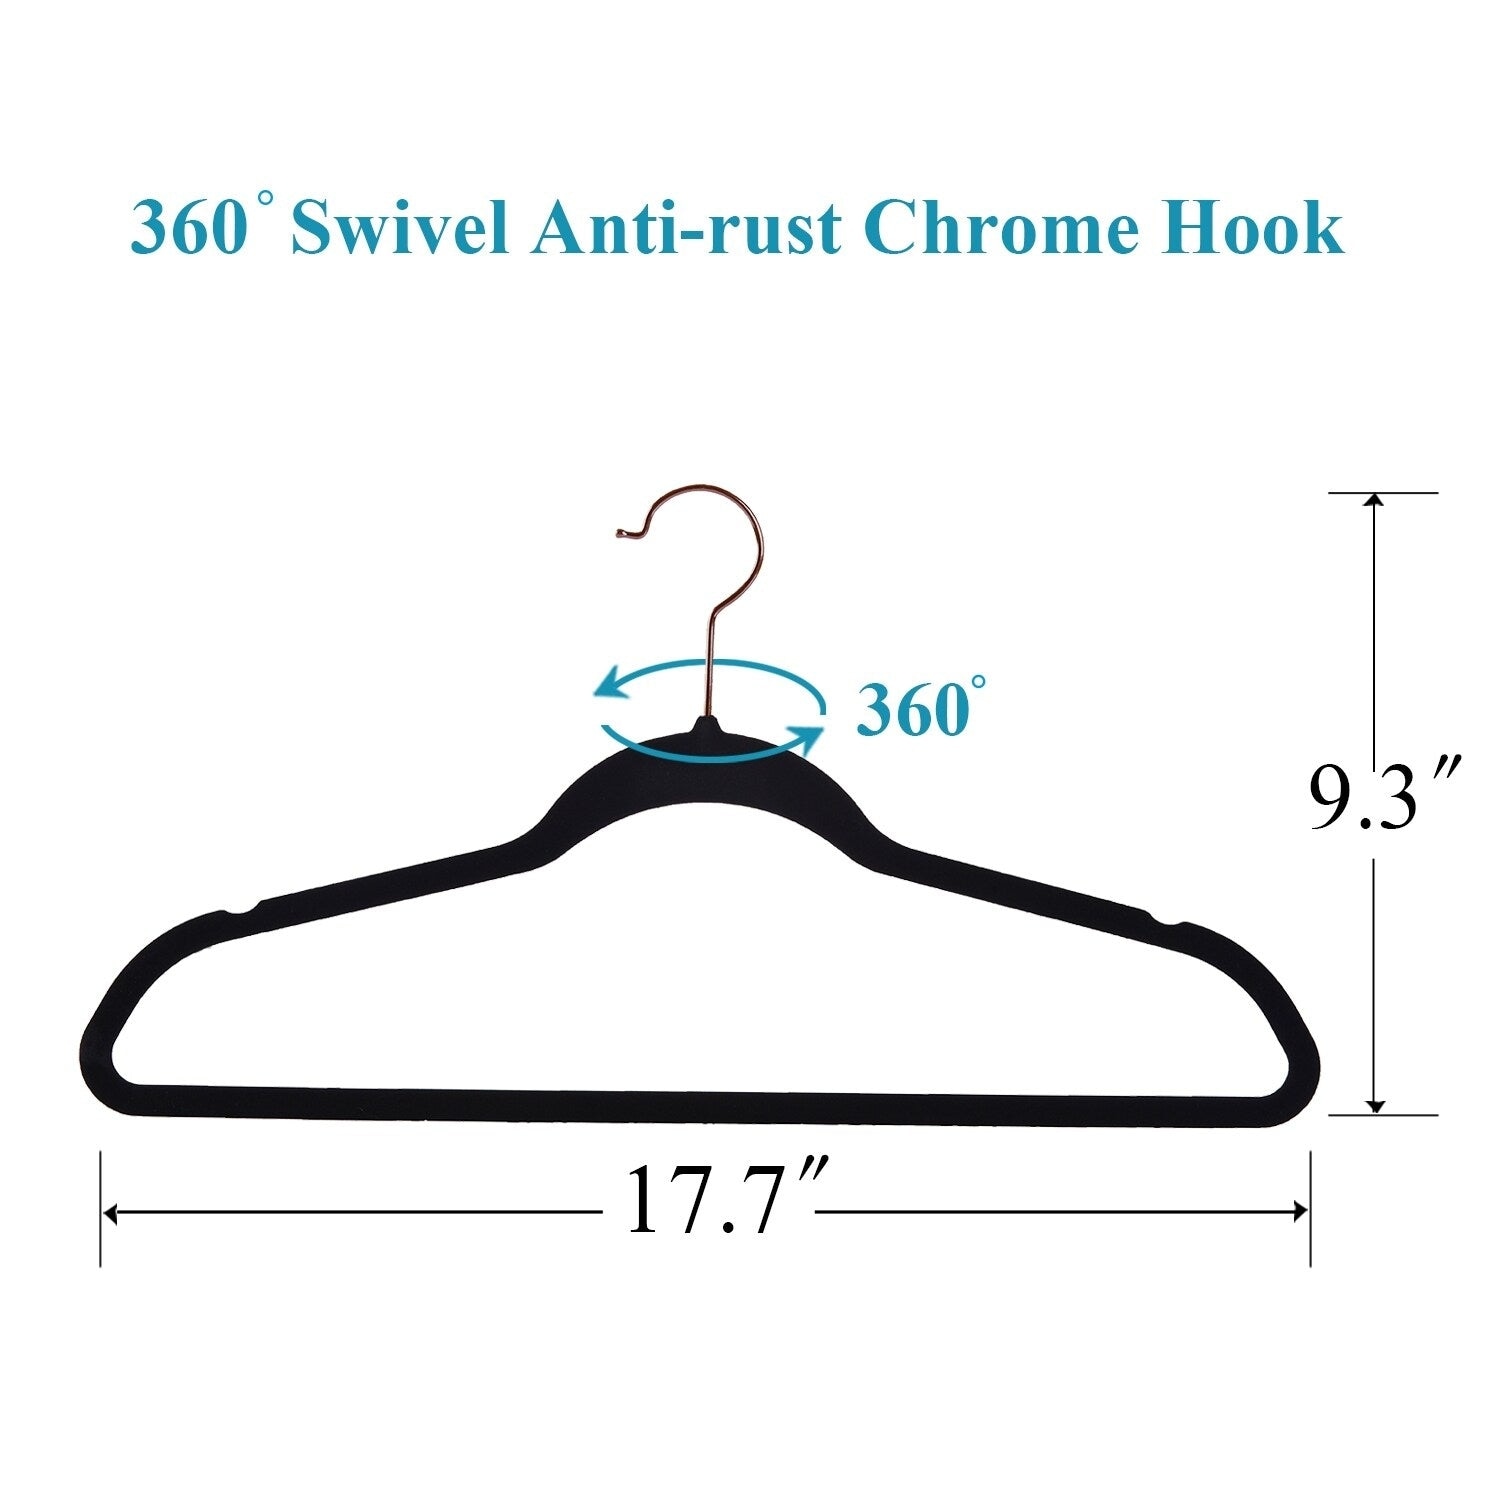 50 Pack Cascading Velvet Hangers with Chrome Hooks Ultra Thin No